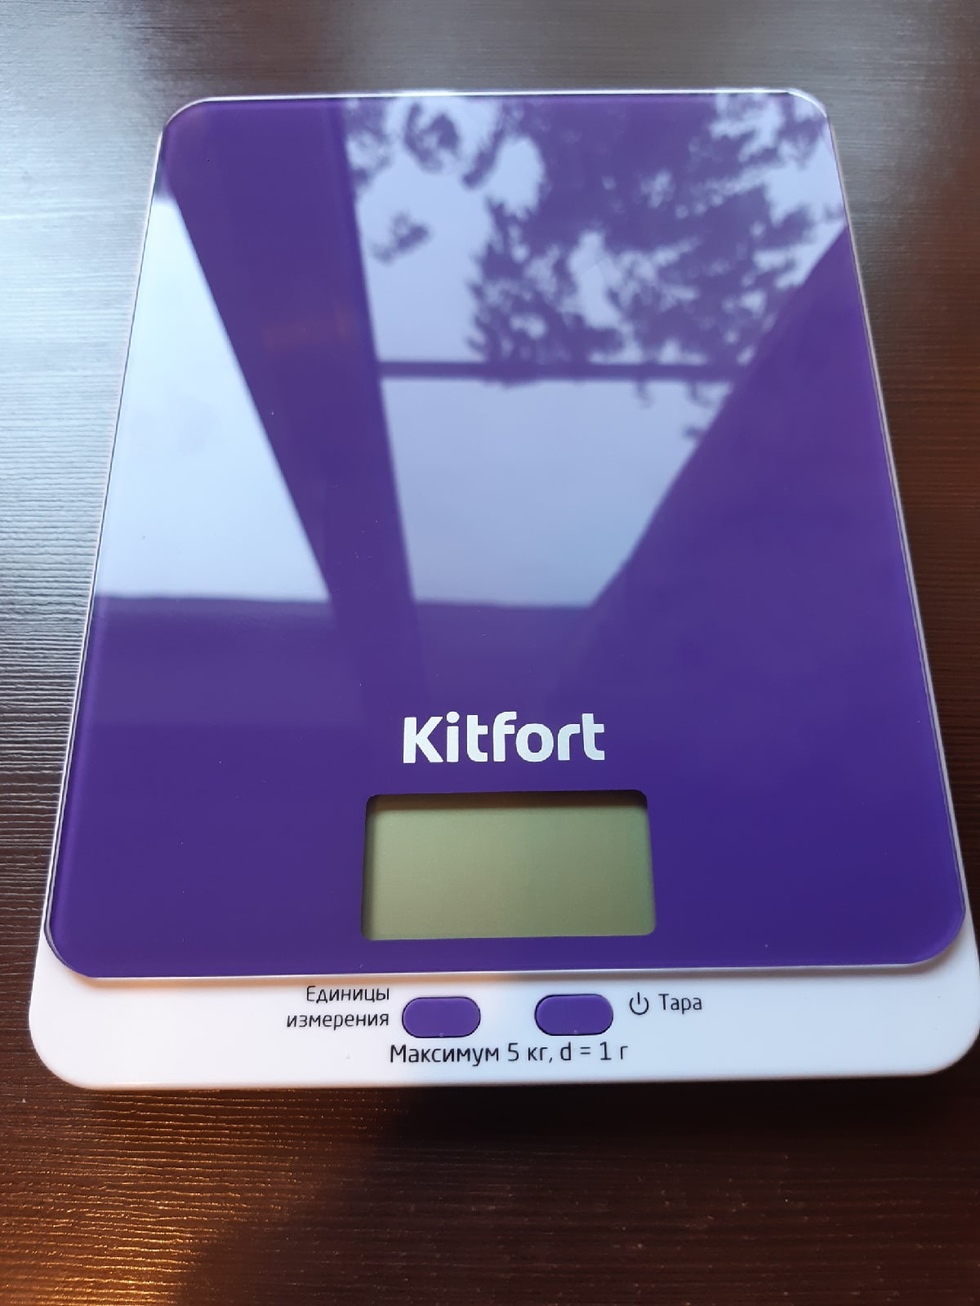 Кухонные весы kitfort 803. Кухонные весы Kitfort KT-803. Весы кухонные Kitfort KT-803-6 (фиолетовые). Весы Kitfort KT-803. Кухонные весы Kitfort кт-803-6, фиолетовые.